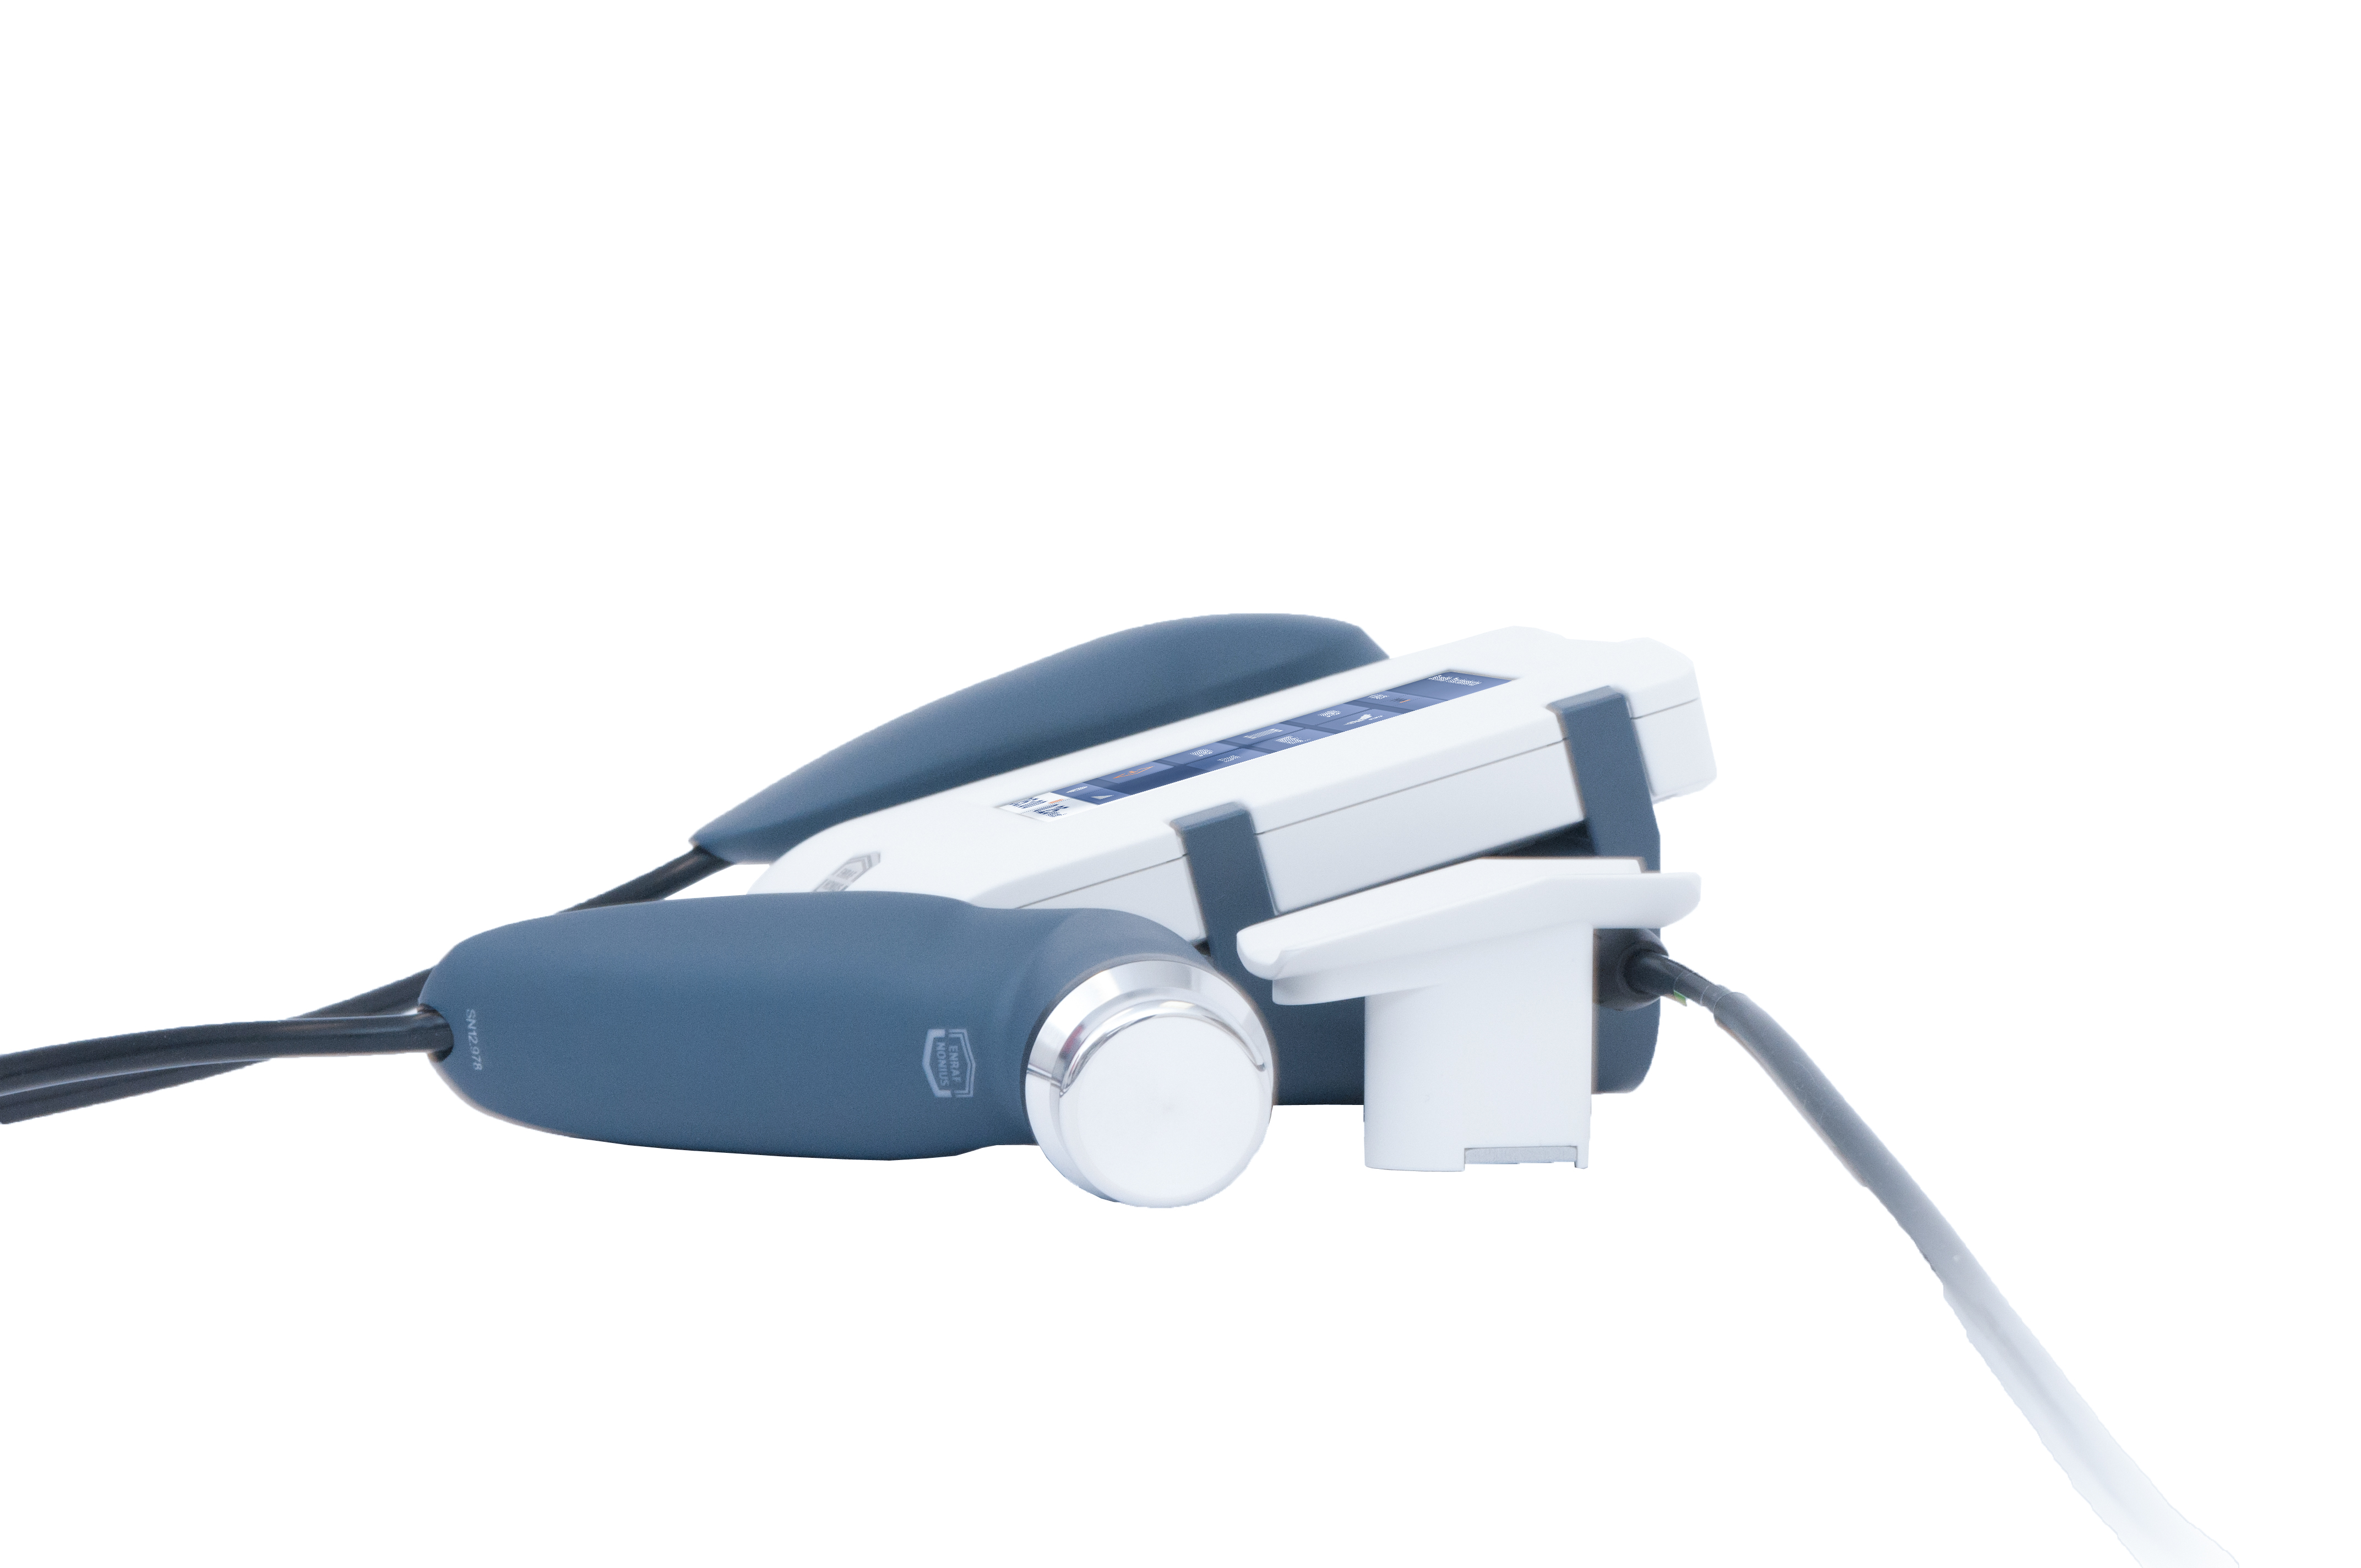 Аппарат ультразвуковой терапии Sonopuls 190 II  с большой УЗ головкой 5 см2